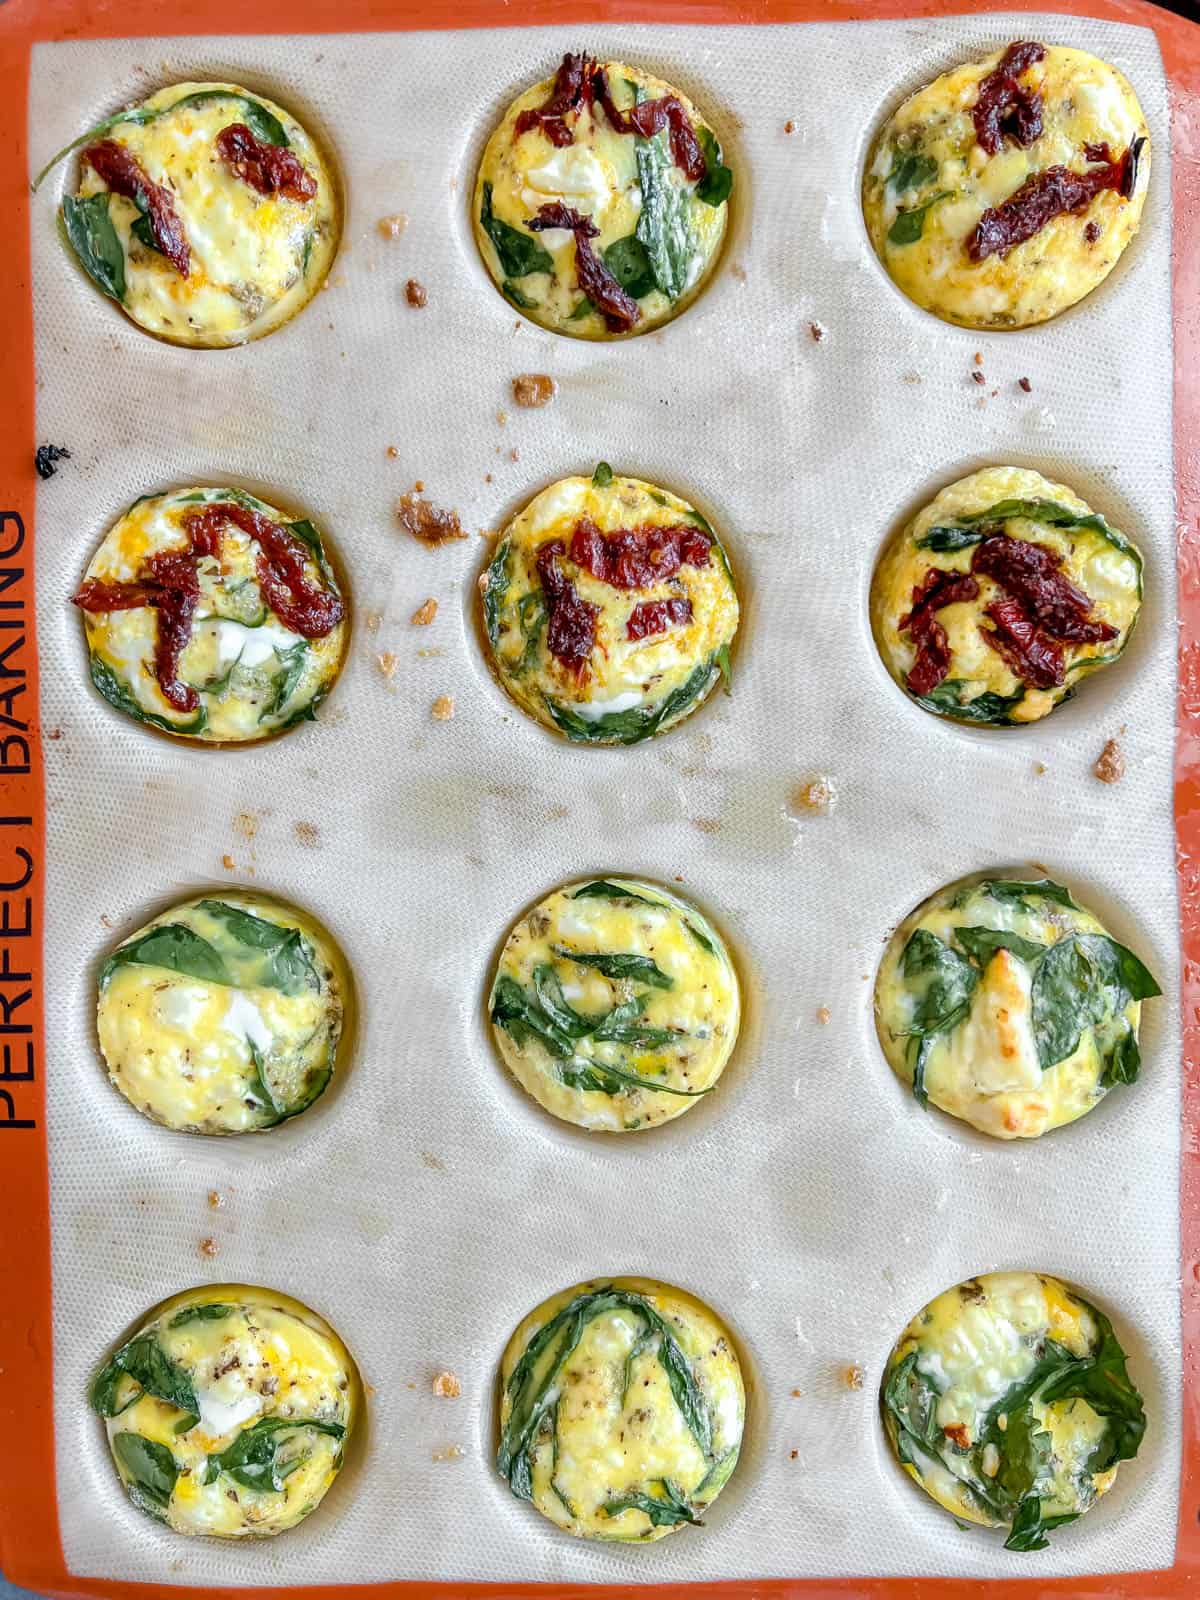 Spinach feta egg bites after baking.